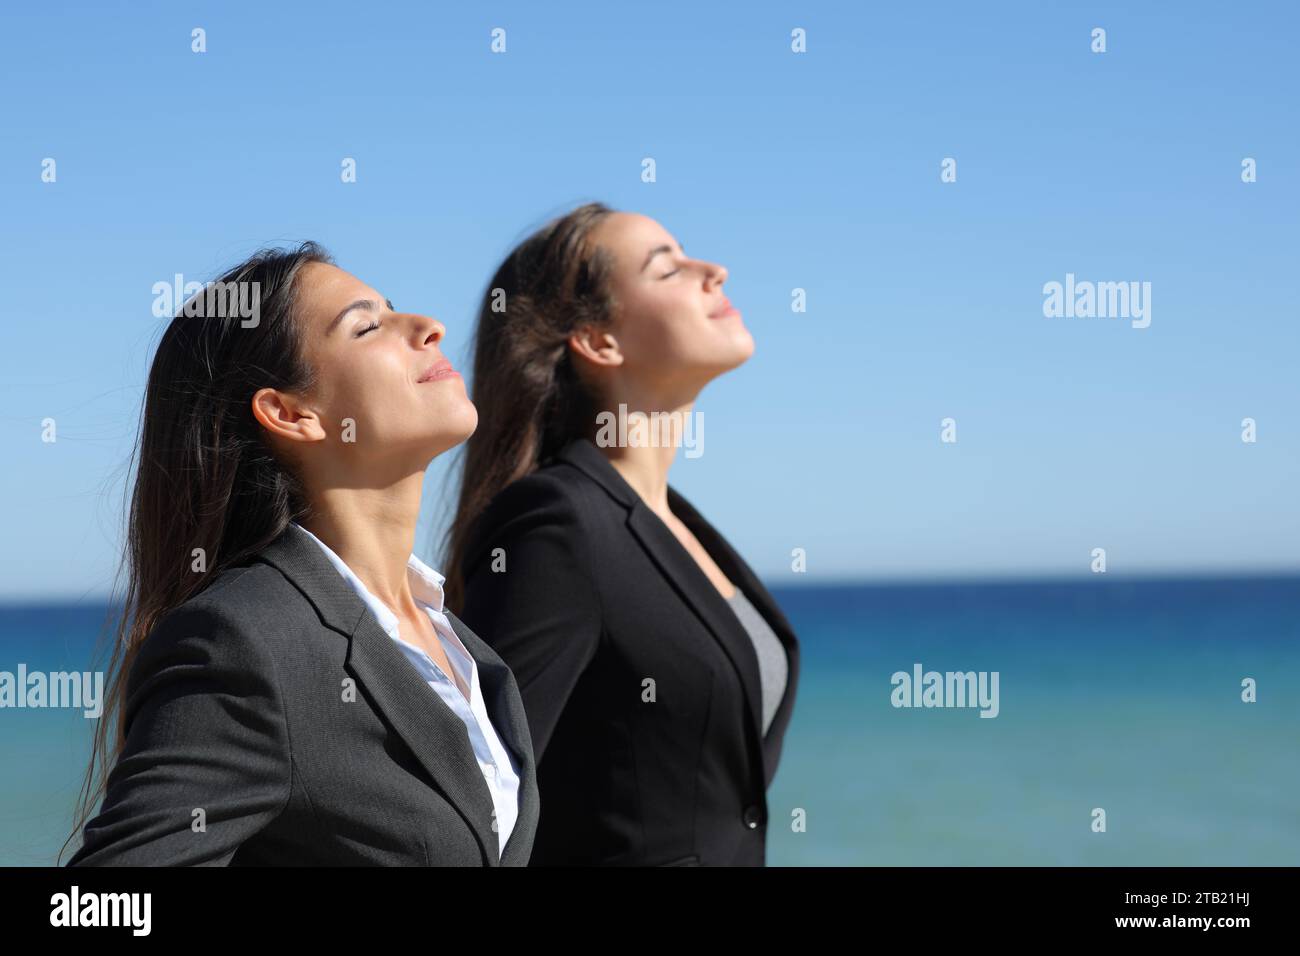 Perfil de dos ejecutivos relajándose respirando aire fresco en la playa Foto de stock